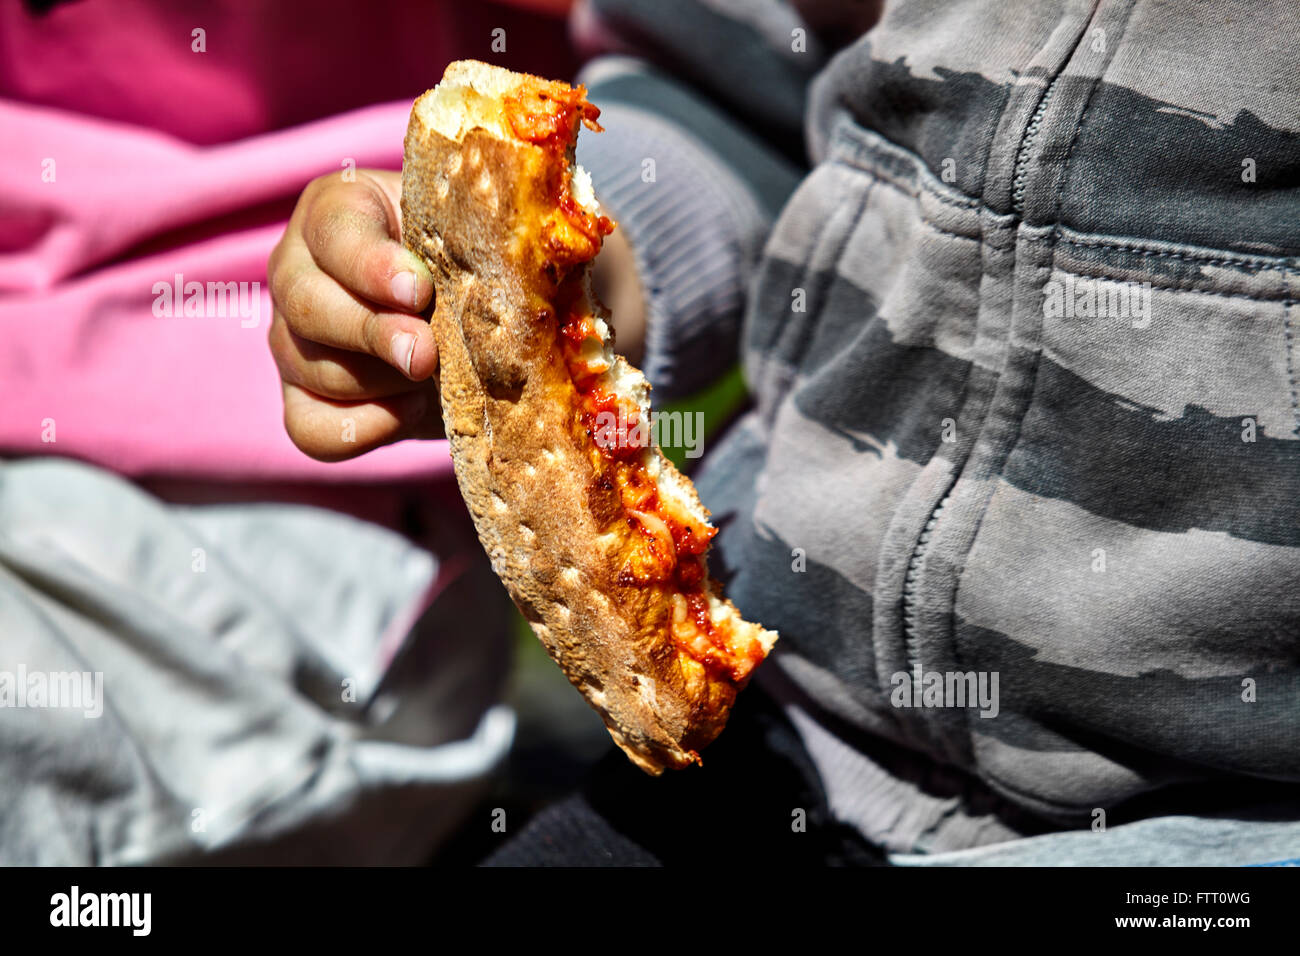 Junge Kind hält eine teilweise gegessen Pizza-Kruste mit einer grauen Jacke an und geringe Schärfentiefe Stockfoto